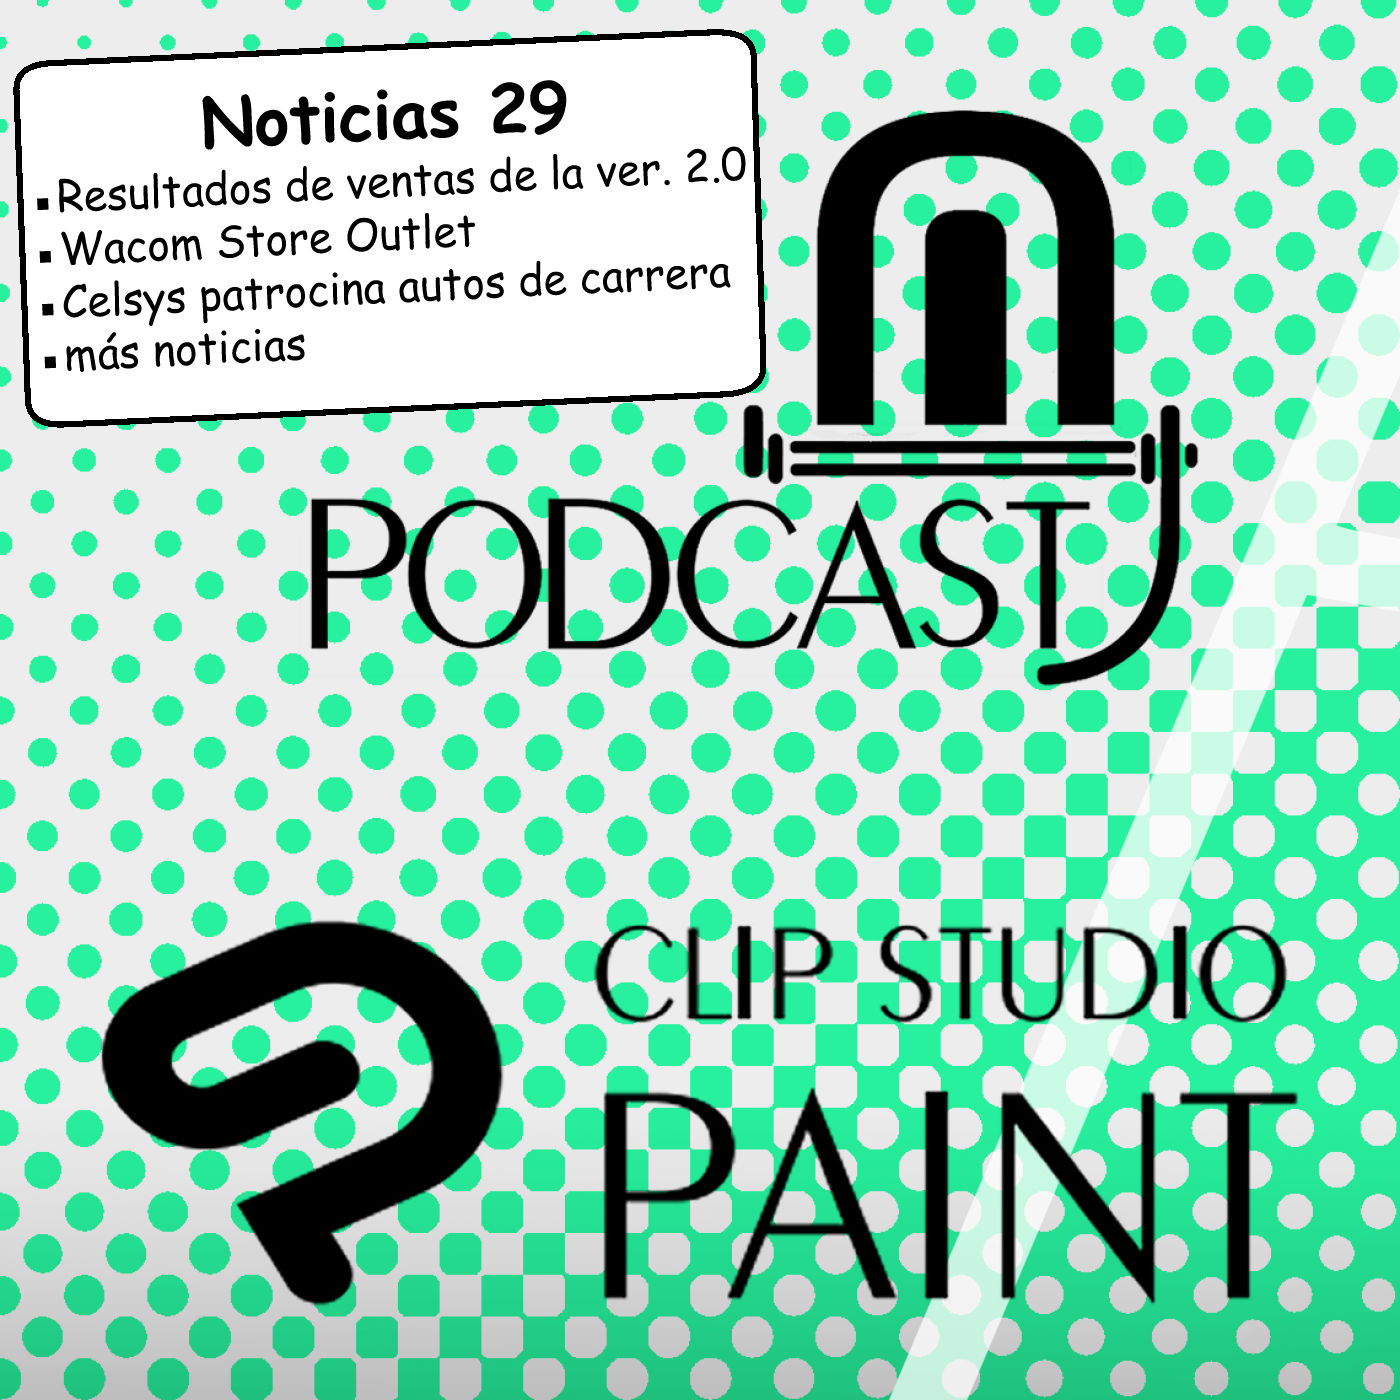 CSP noticias 29. Resultados de ventas de Clip Studio Paint 2.0, Wacom Store Outlet, Celsys patrocina autos de carrera y más